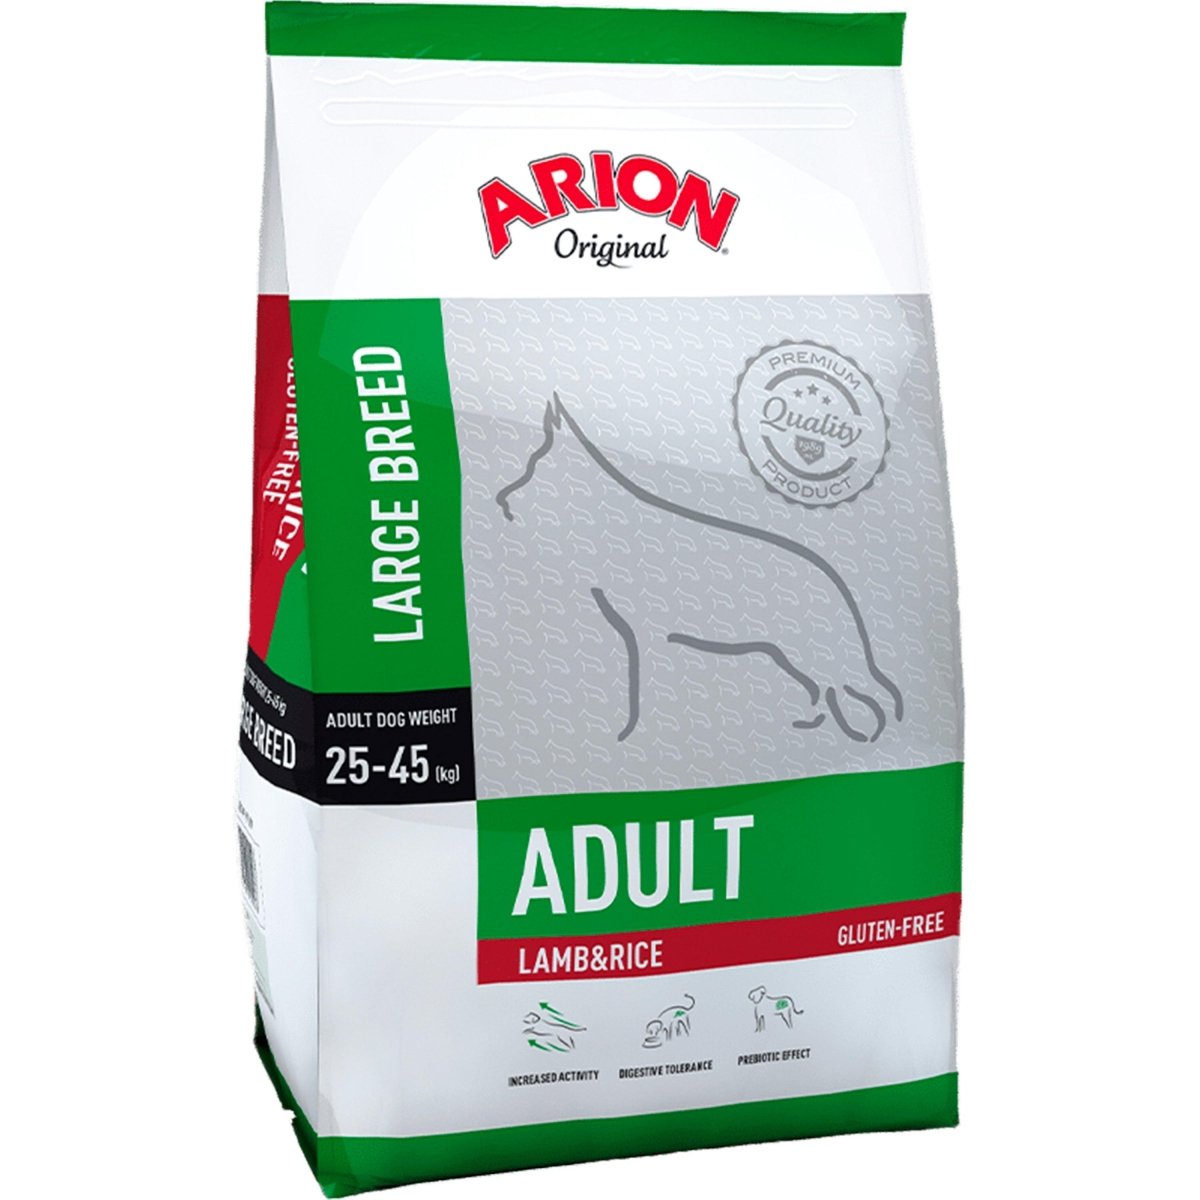 Billede af Arion Original Adult Large Breed Lamb & Rice - 12 kg hos animondo